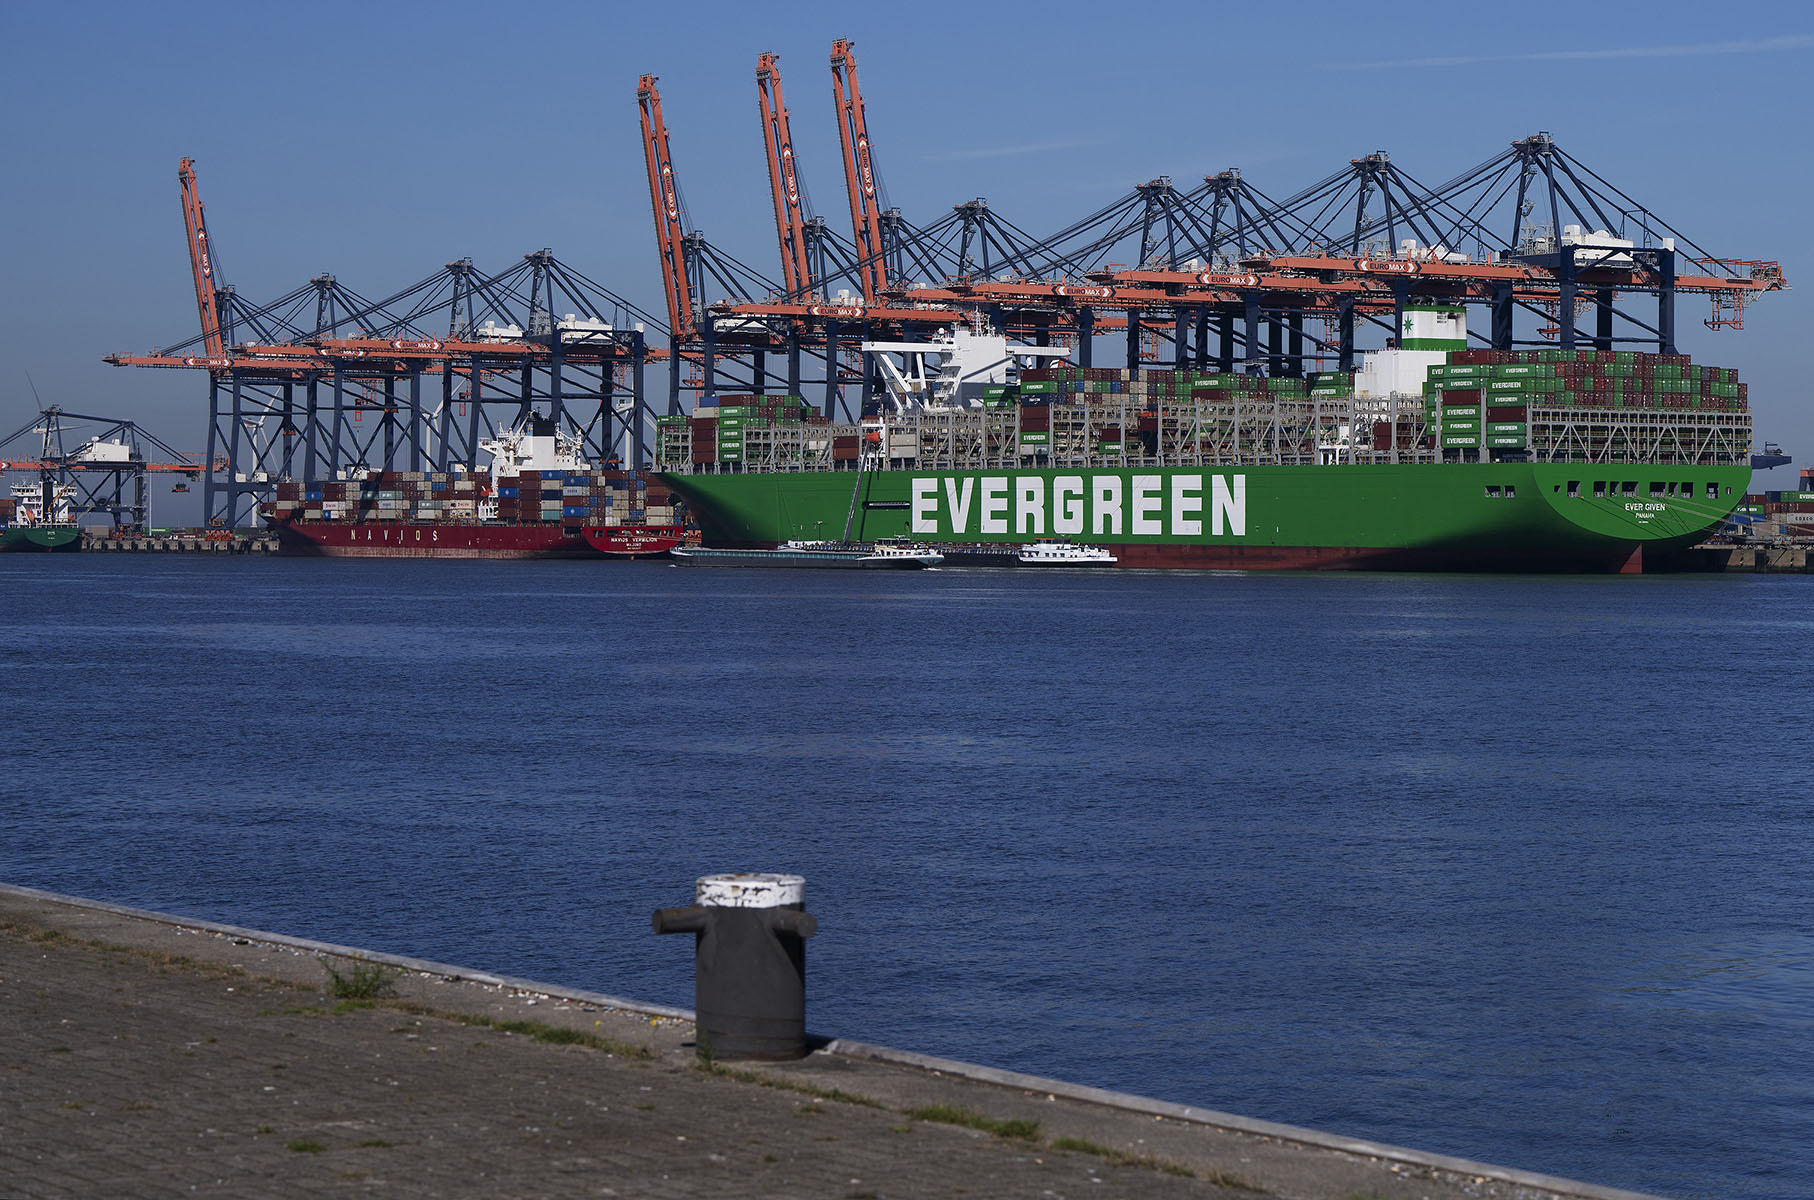 Das Containerschiff Ever Given der Reederei Evergreen